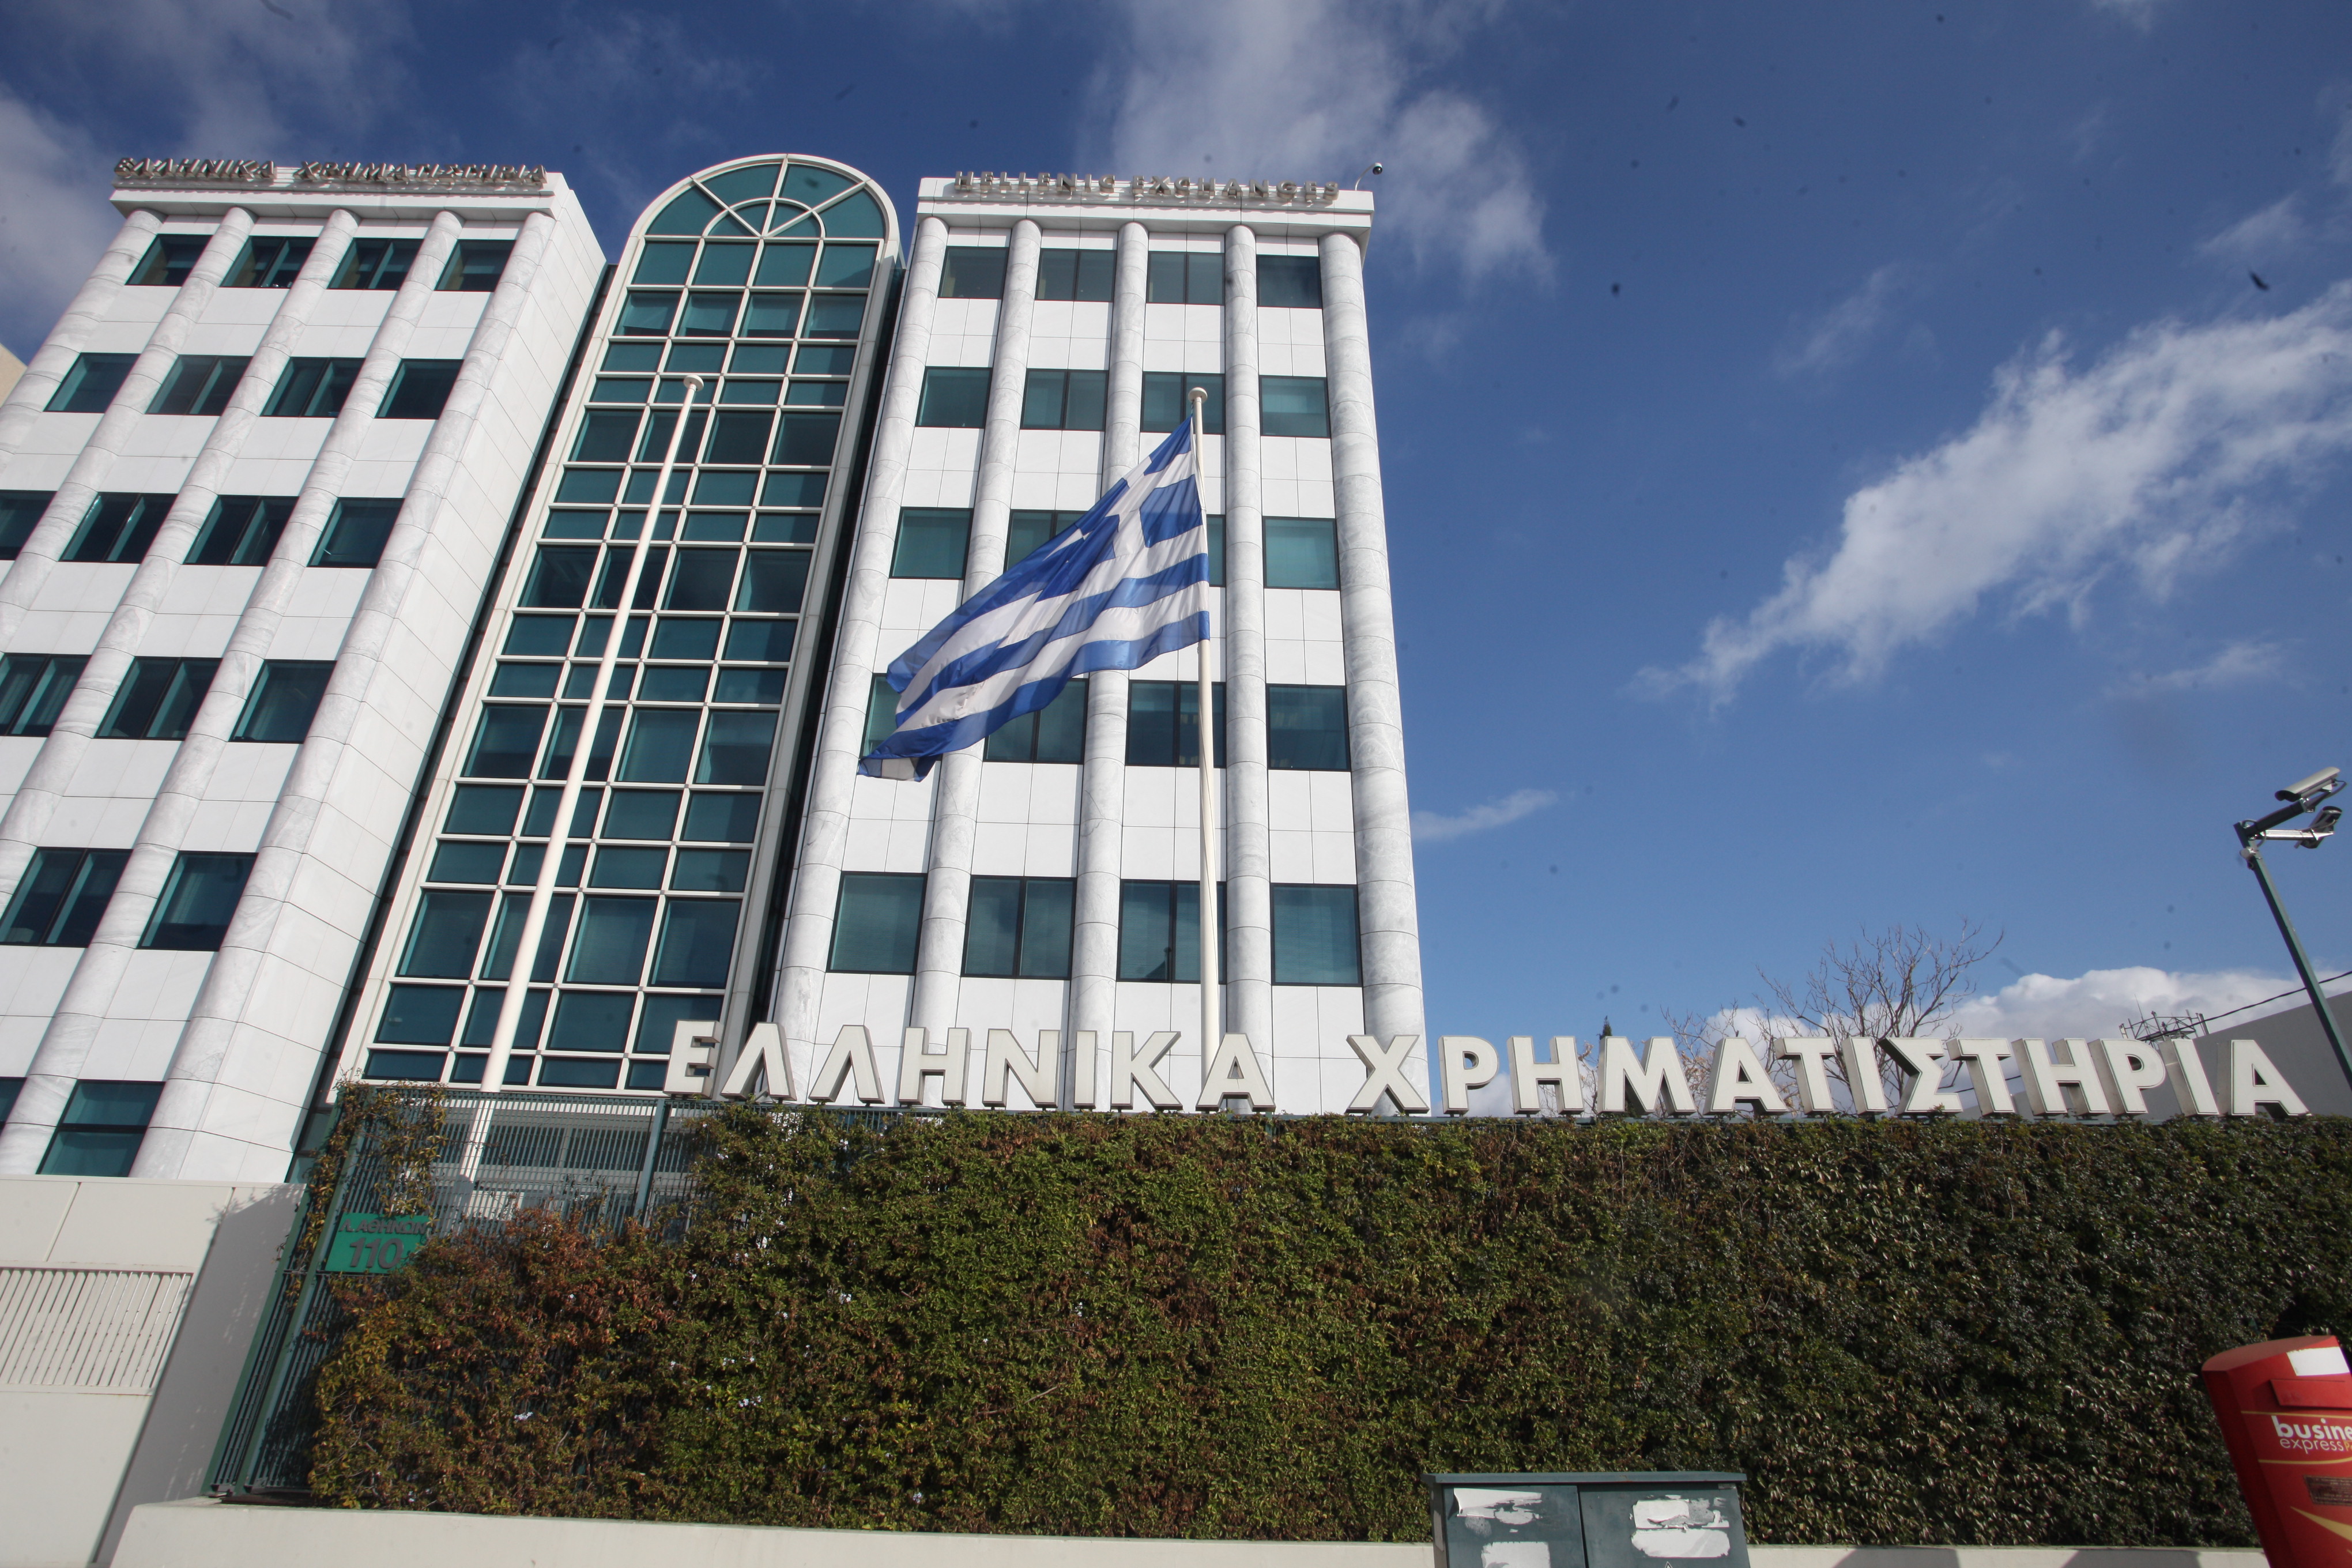 Με άνοδο 2,27% έκλεισε το Χρηματιστήριο Αθηνών την Δευτέρα